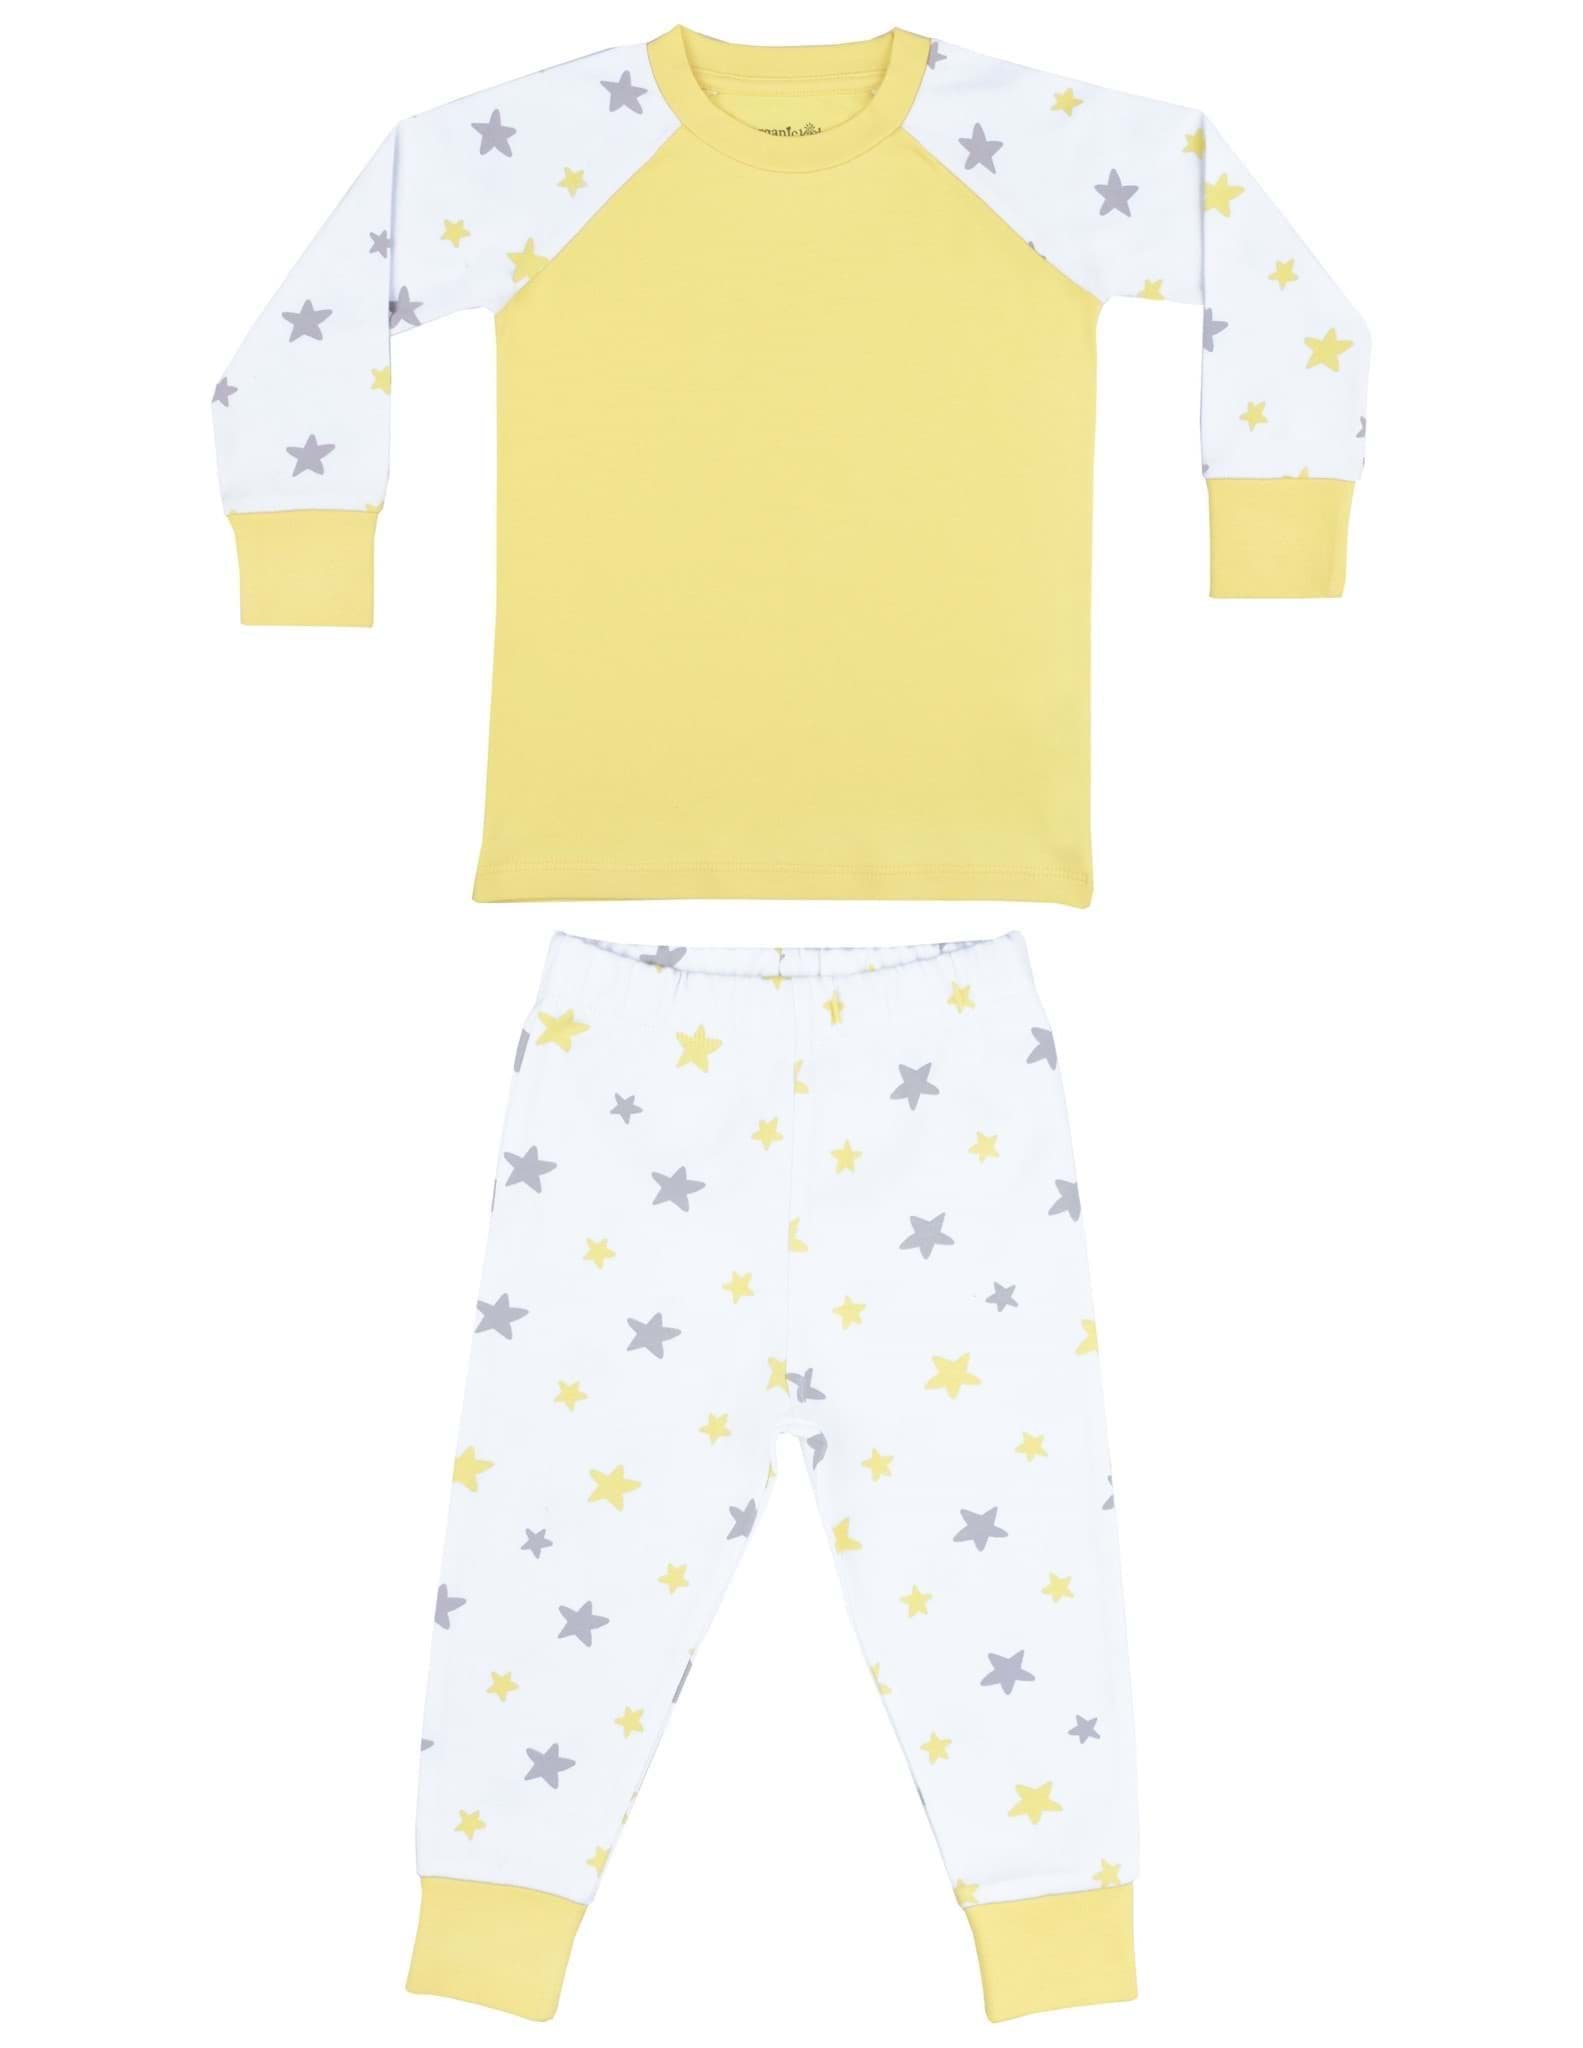 Nighty Night Çocuk Pijama Takımı resmi